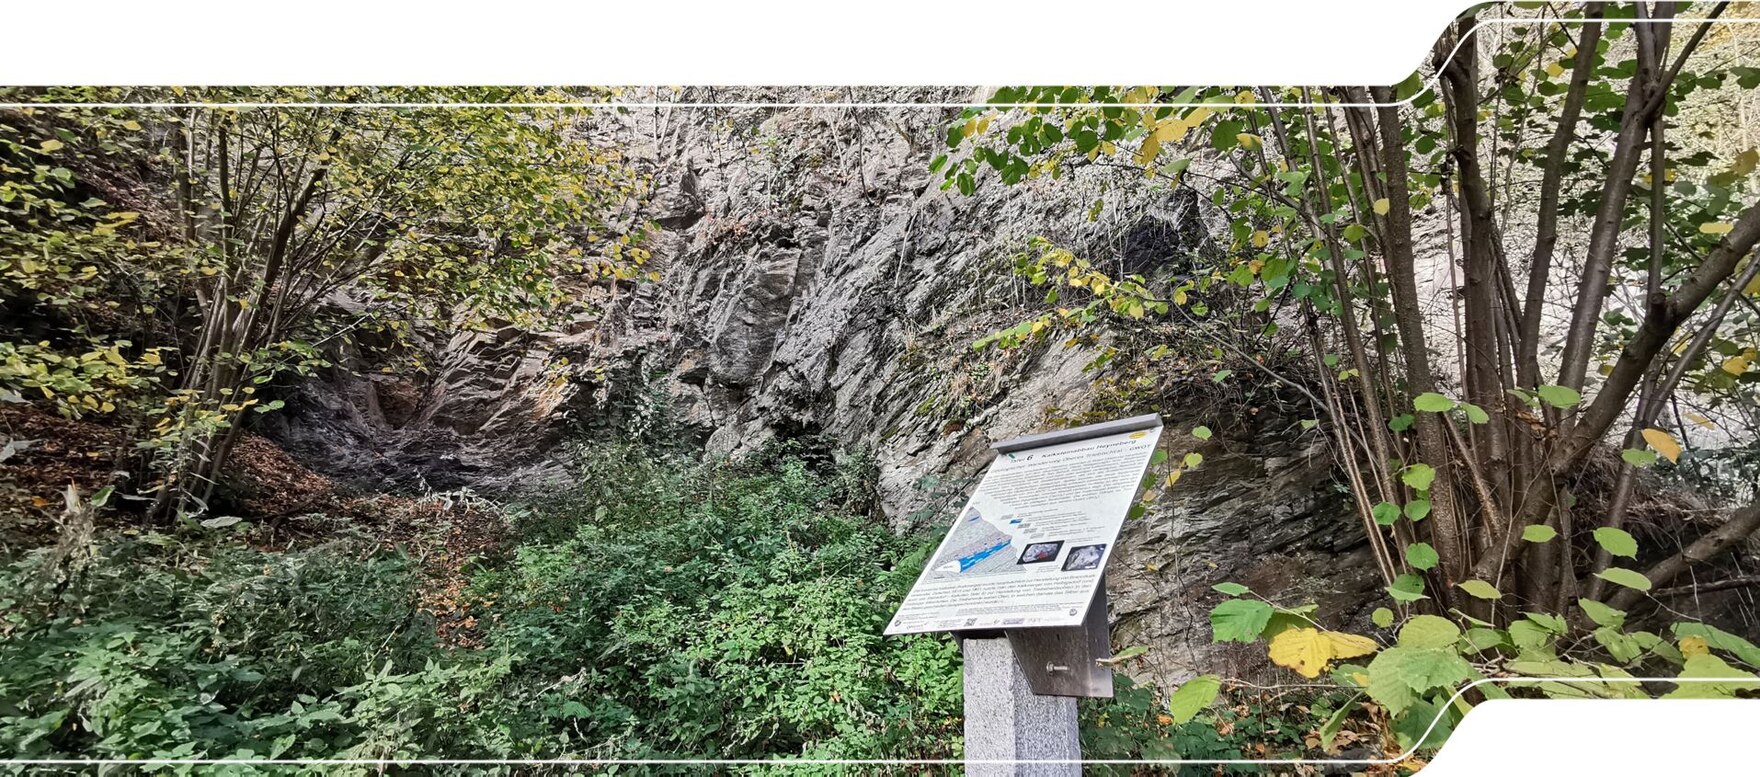 Informationstafel eines Geopfads vor einer ehemaligen Steinbruchwand.